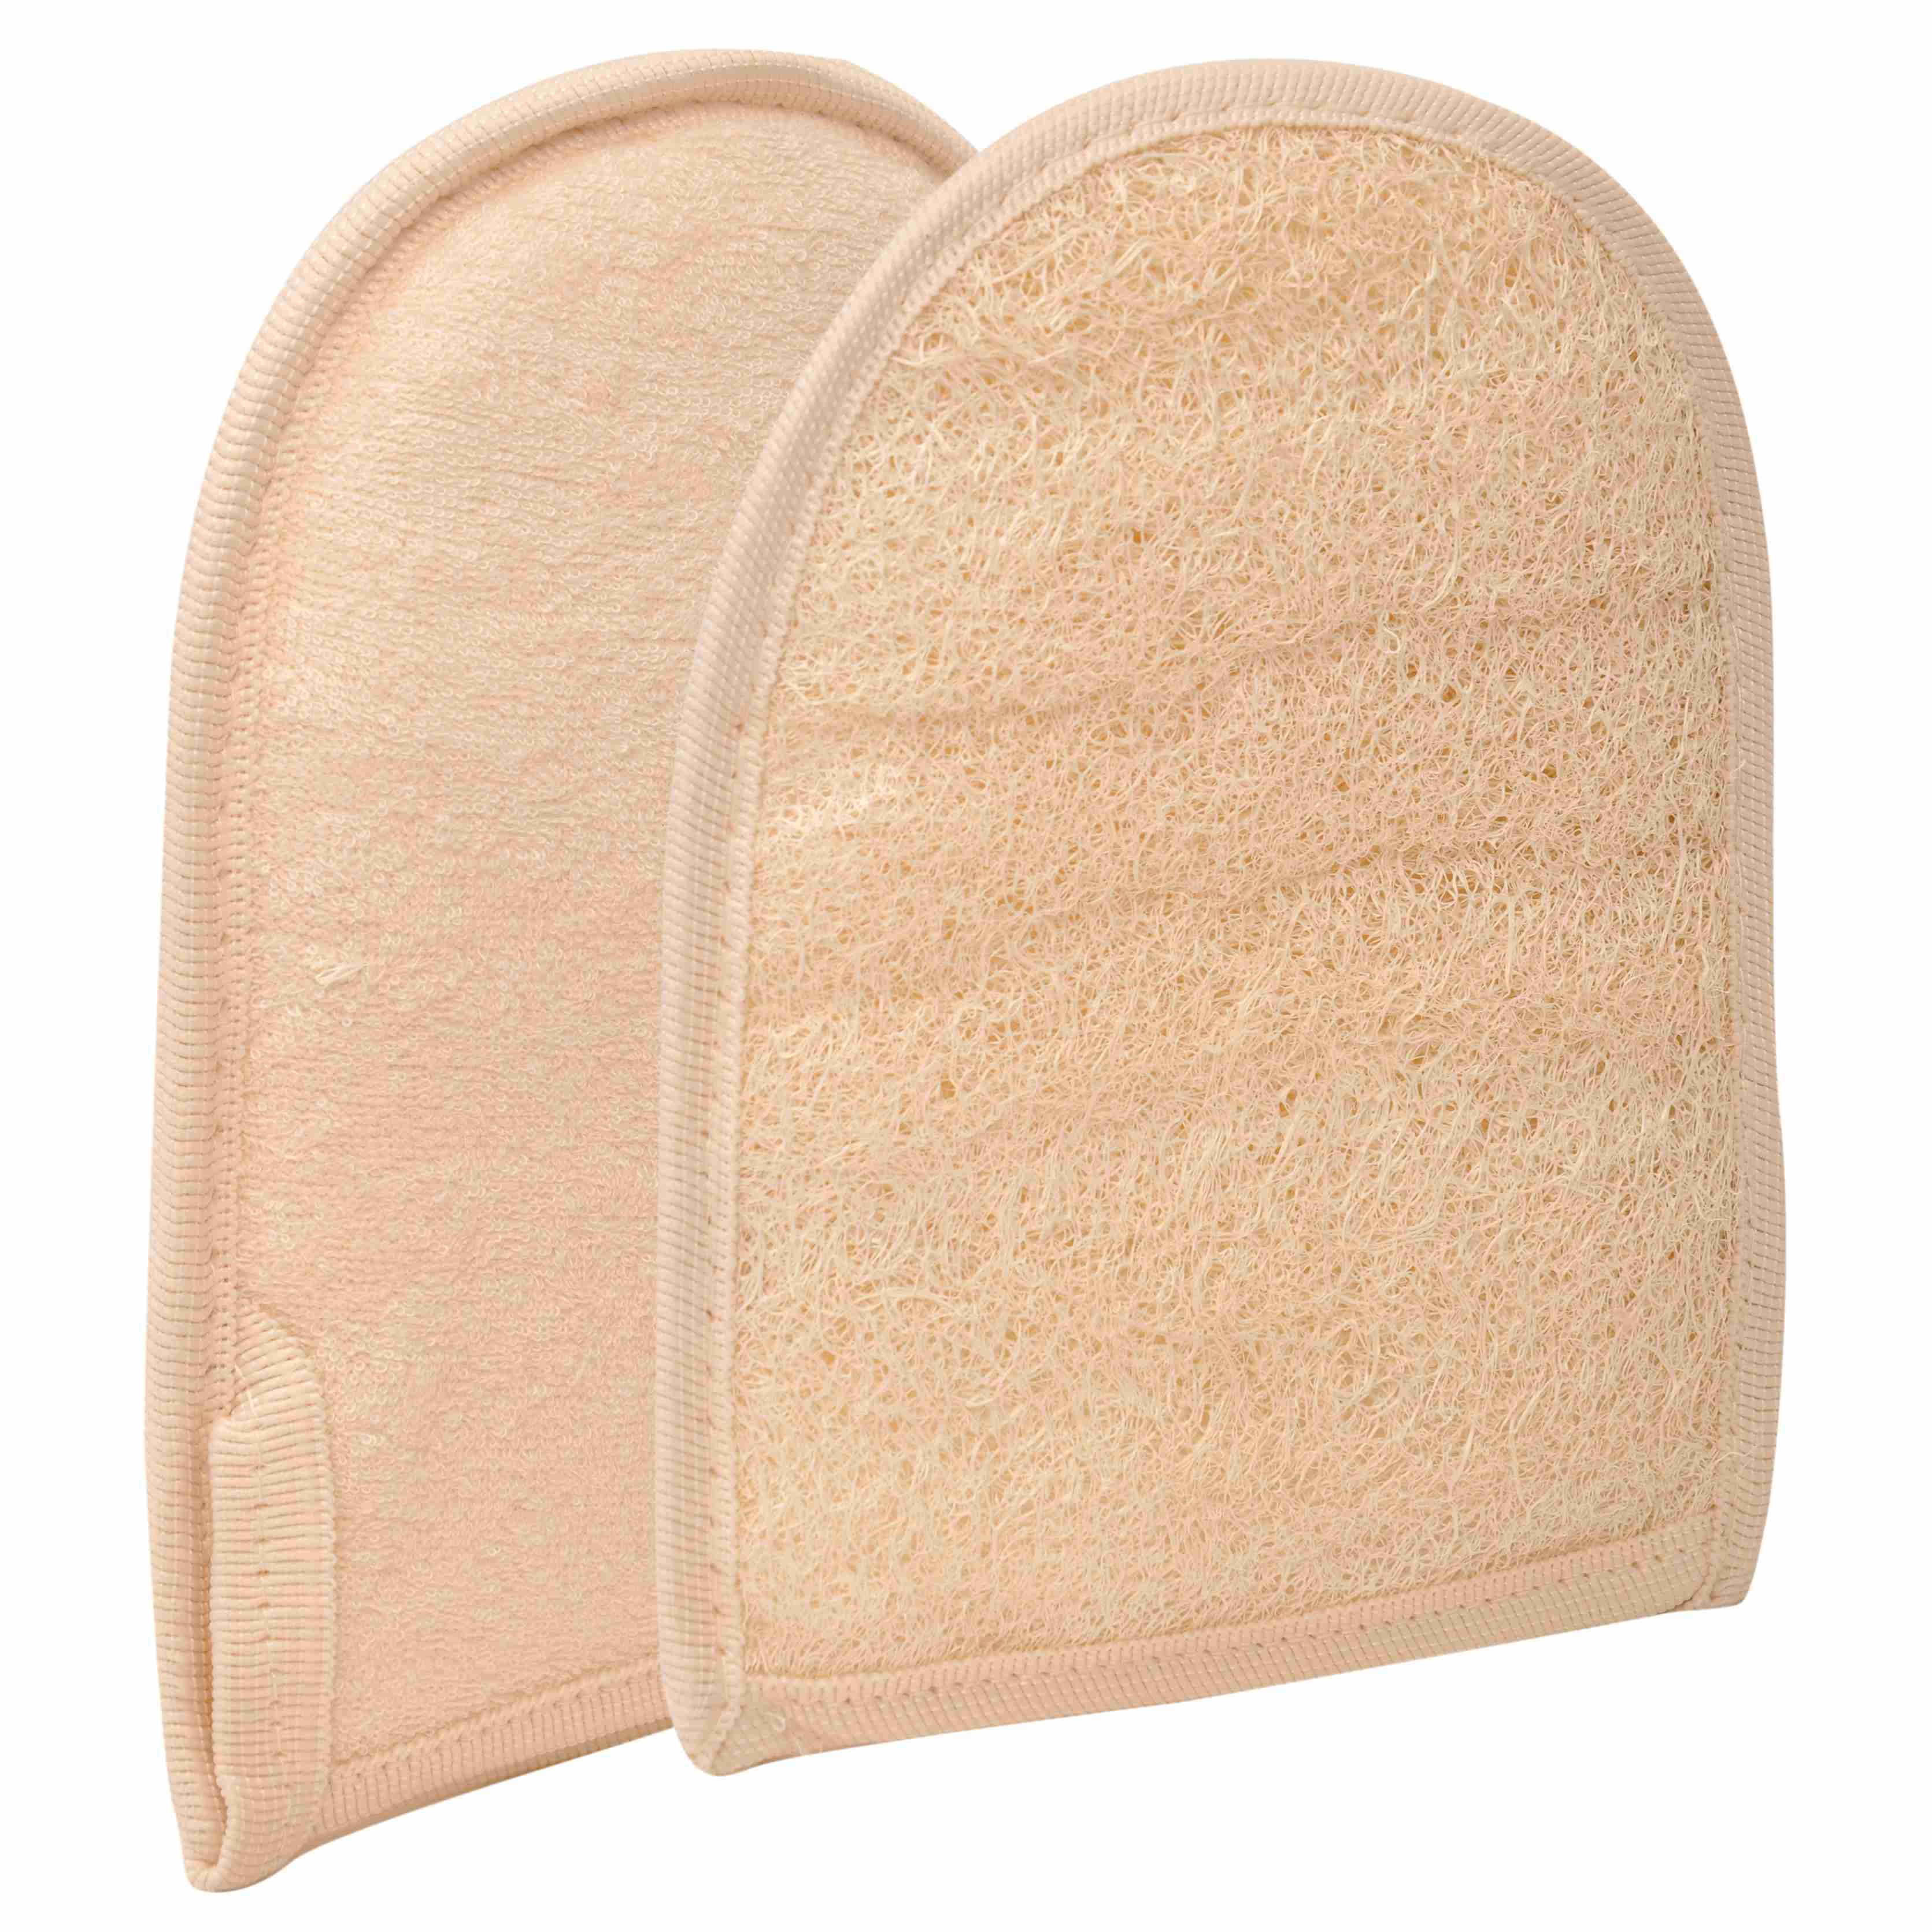 body-scrubber-loofah-sponge-exfoliate-skin-care with cash back rebate